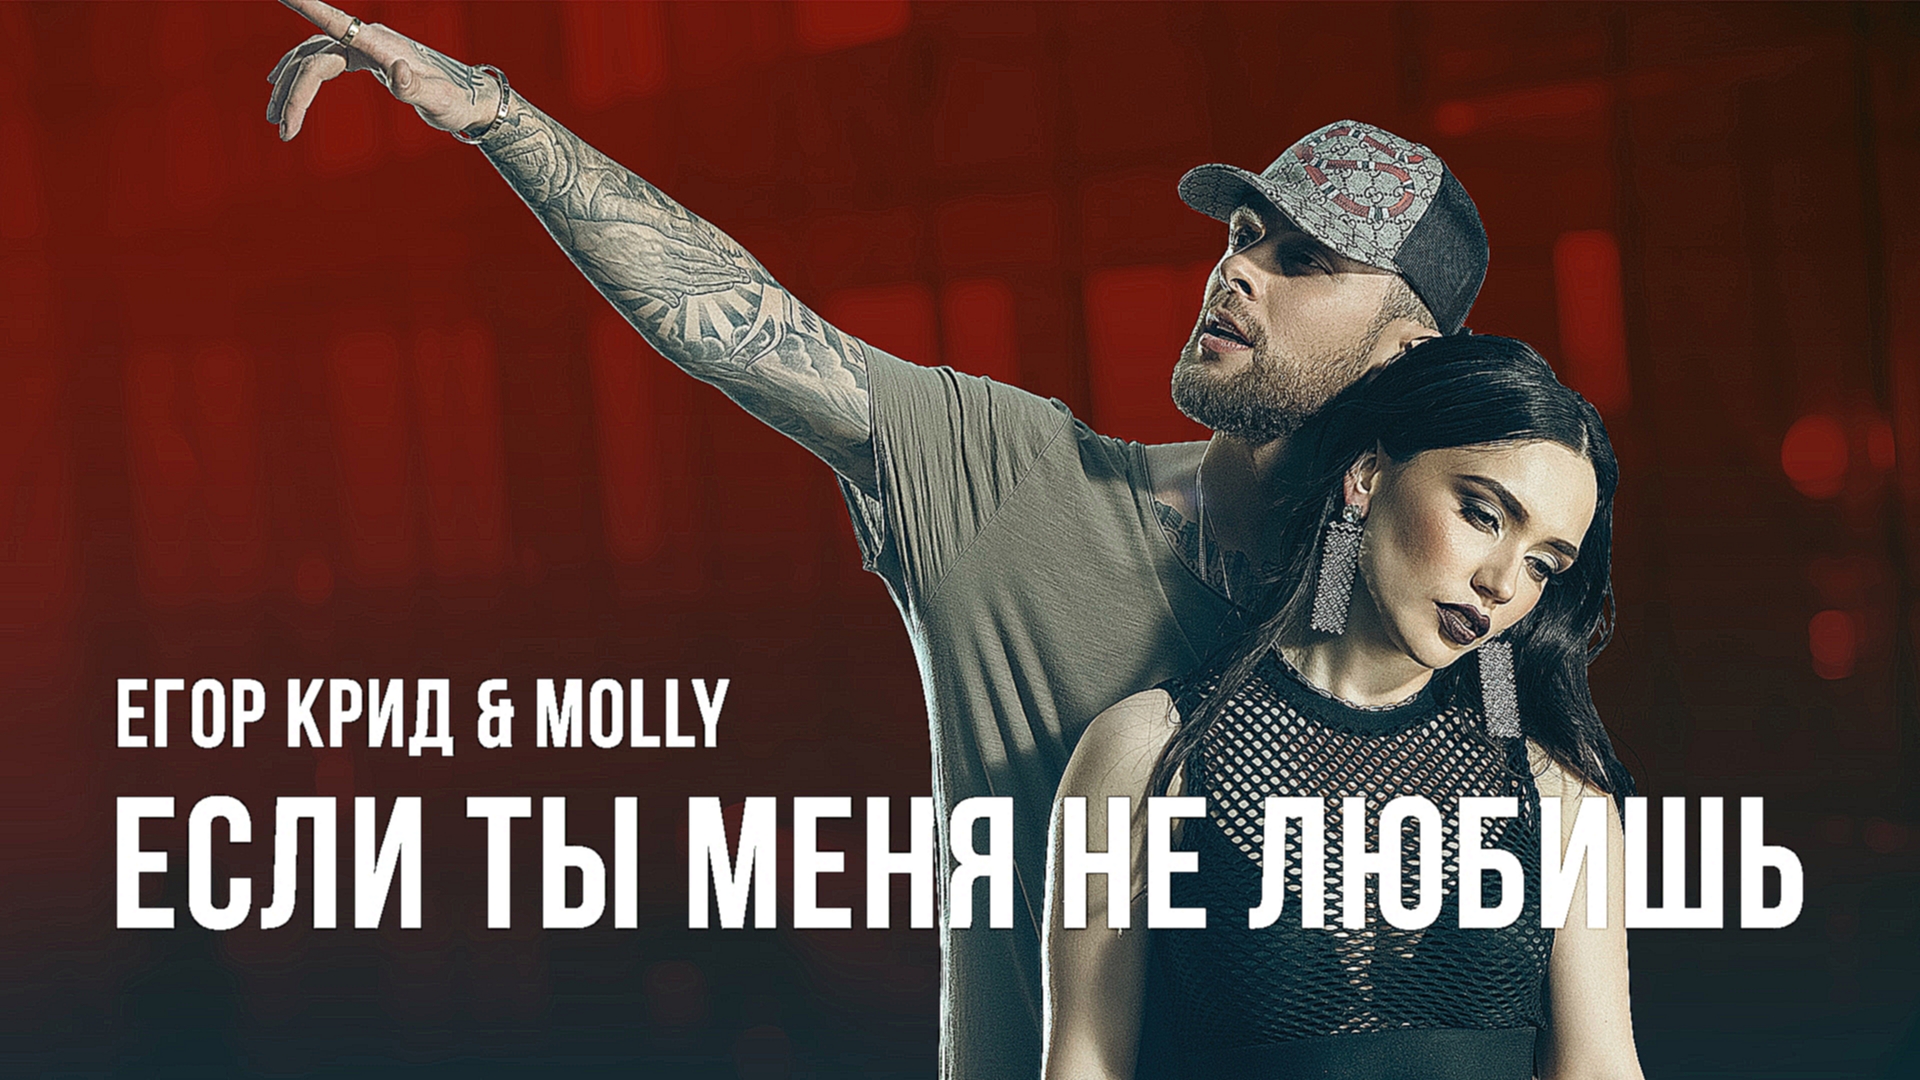 Егор Крид & MOLLY - Если ты меня не любишь (премьера клипа, 2017) - видеоклип на песню